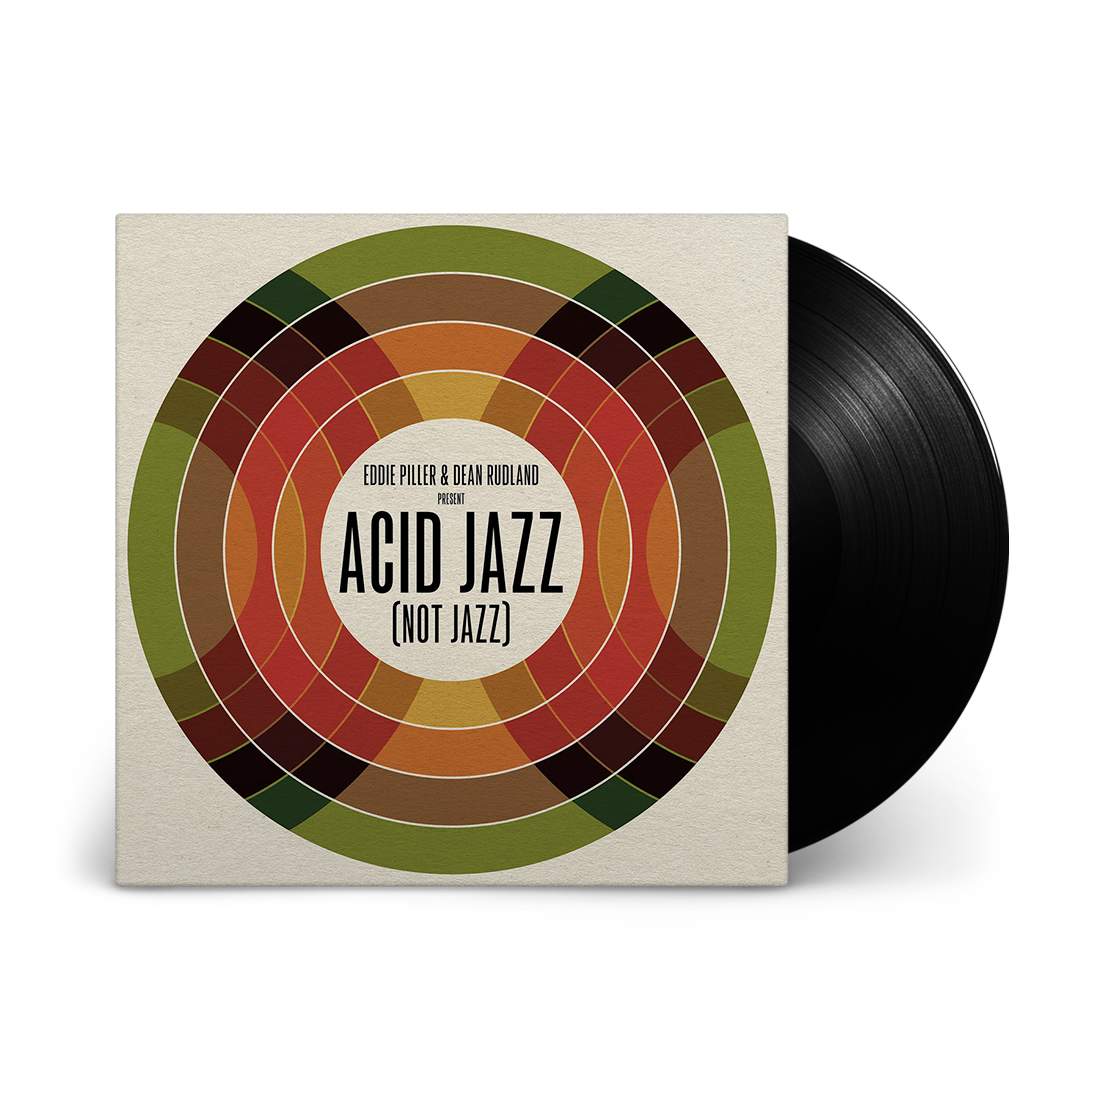 Eddie Piller & Dean Rudland present - Acid Jazz (Not Jazz): Vinyl LP